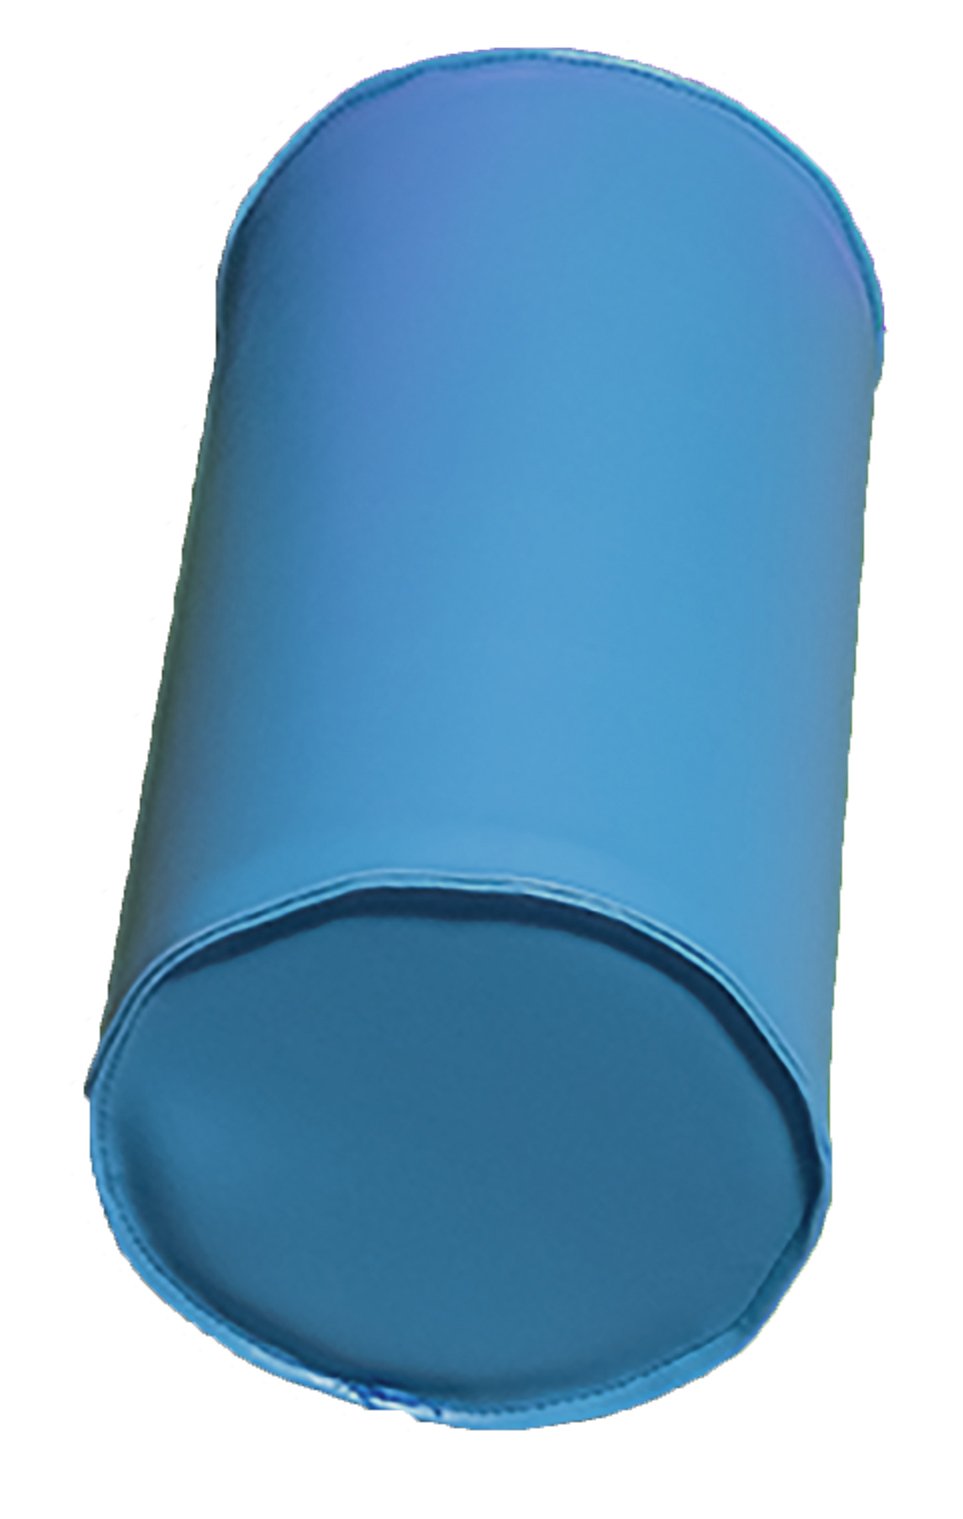 Module cylindre en mousse diam 25cm turquoise